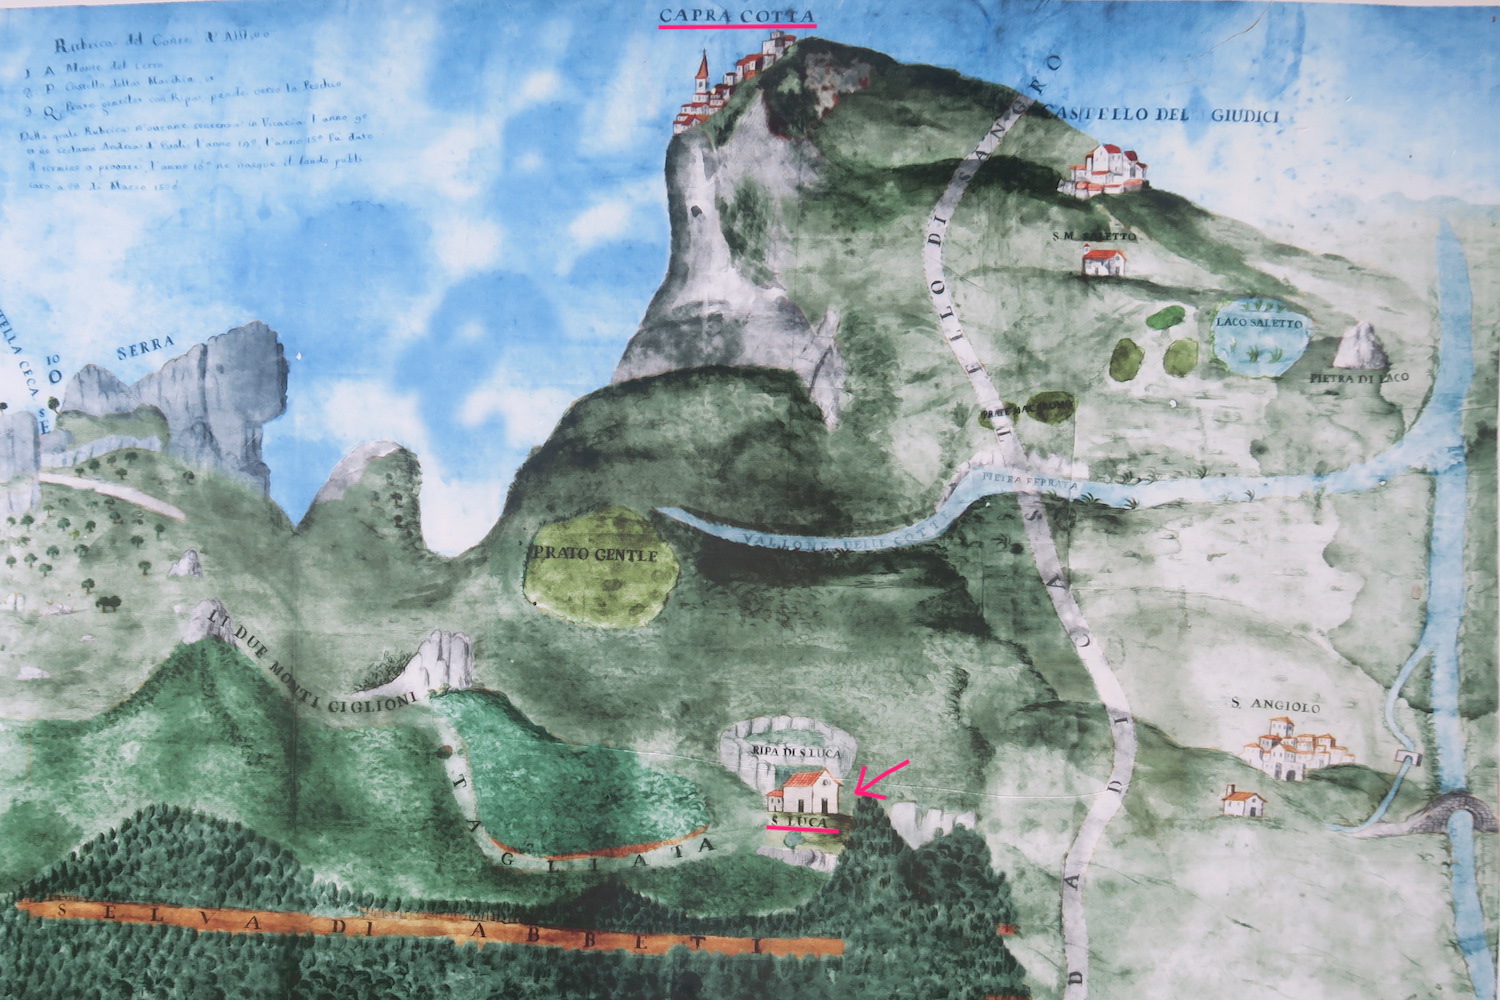 岩の庵 聖パウロ書簡運ぶ聖ルカが宿ったそうな、涼求めモリーゼの山に登れば_f0234936_1554759.jpg